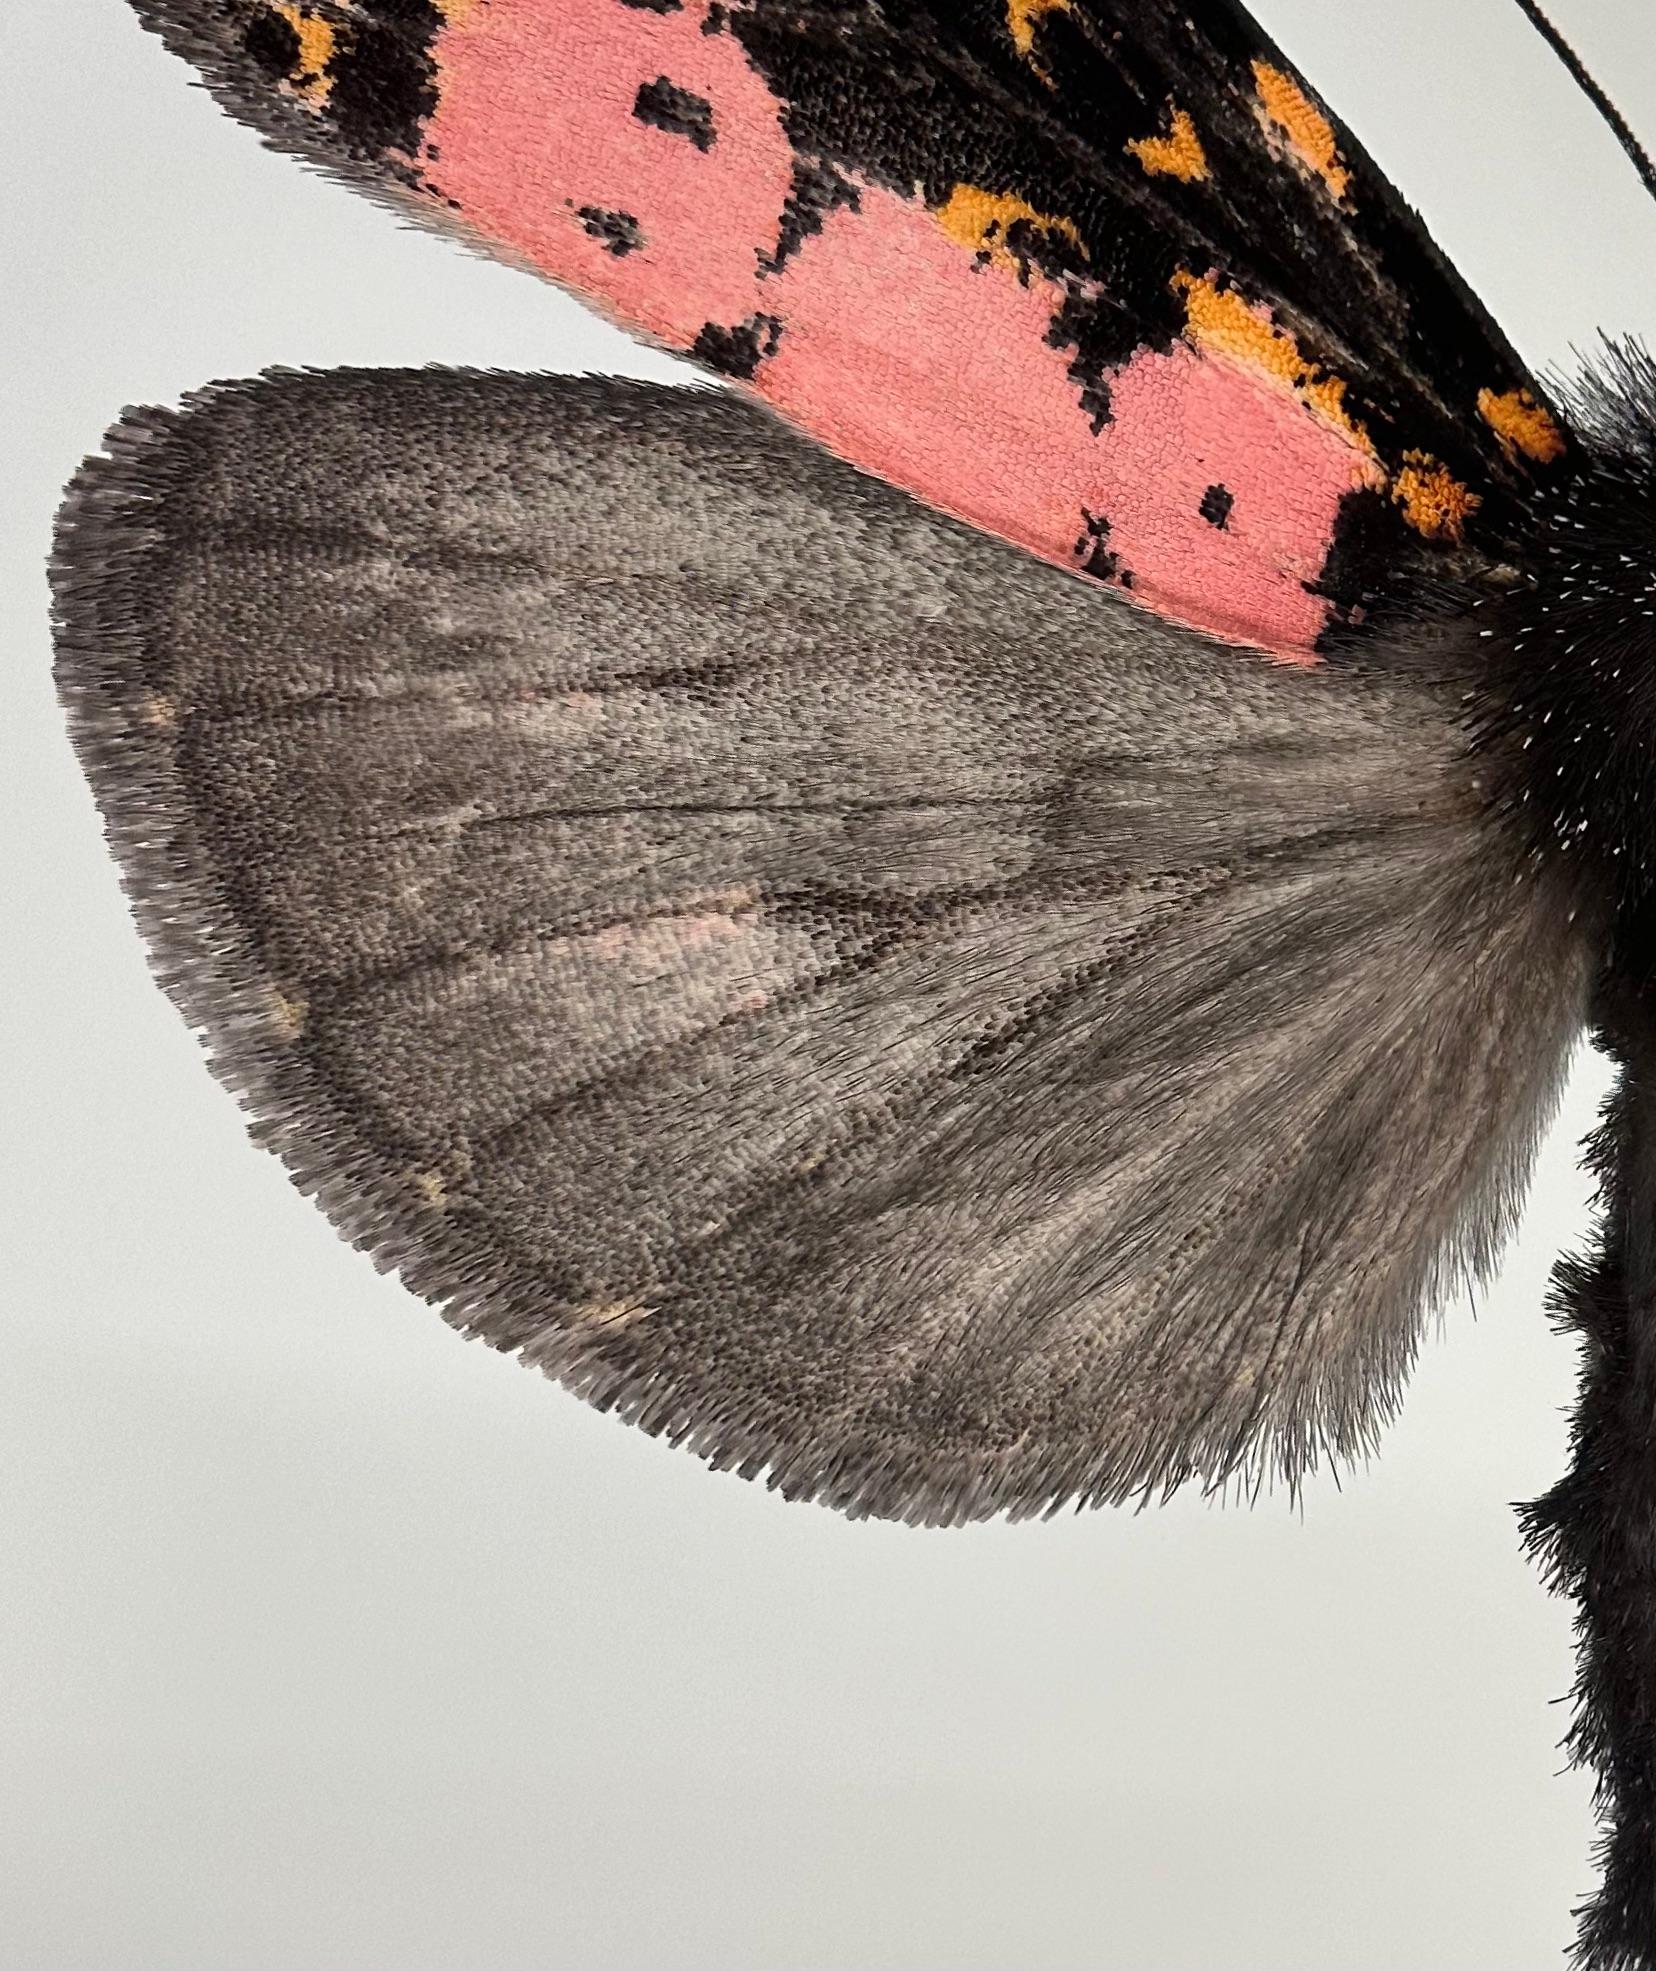 Xanthopastis Regnatrix, Rosa, Orange, Braun, Weiß, Nature Motte Insekt – Photograph von Joseph Scheer